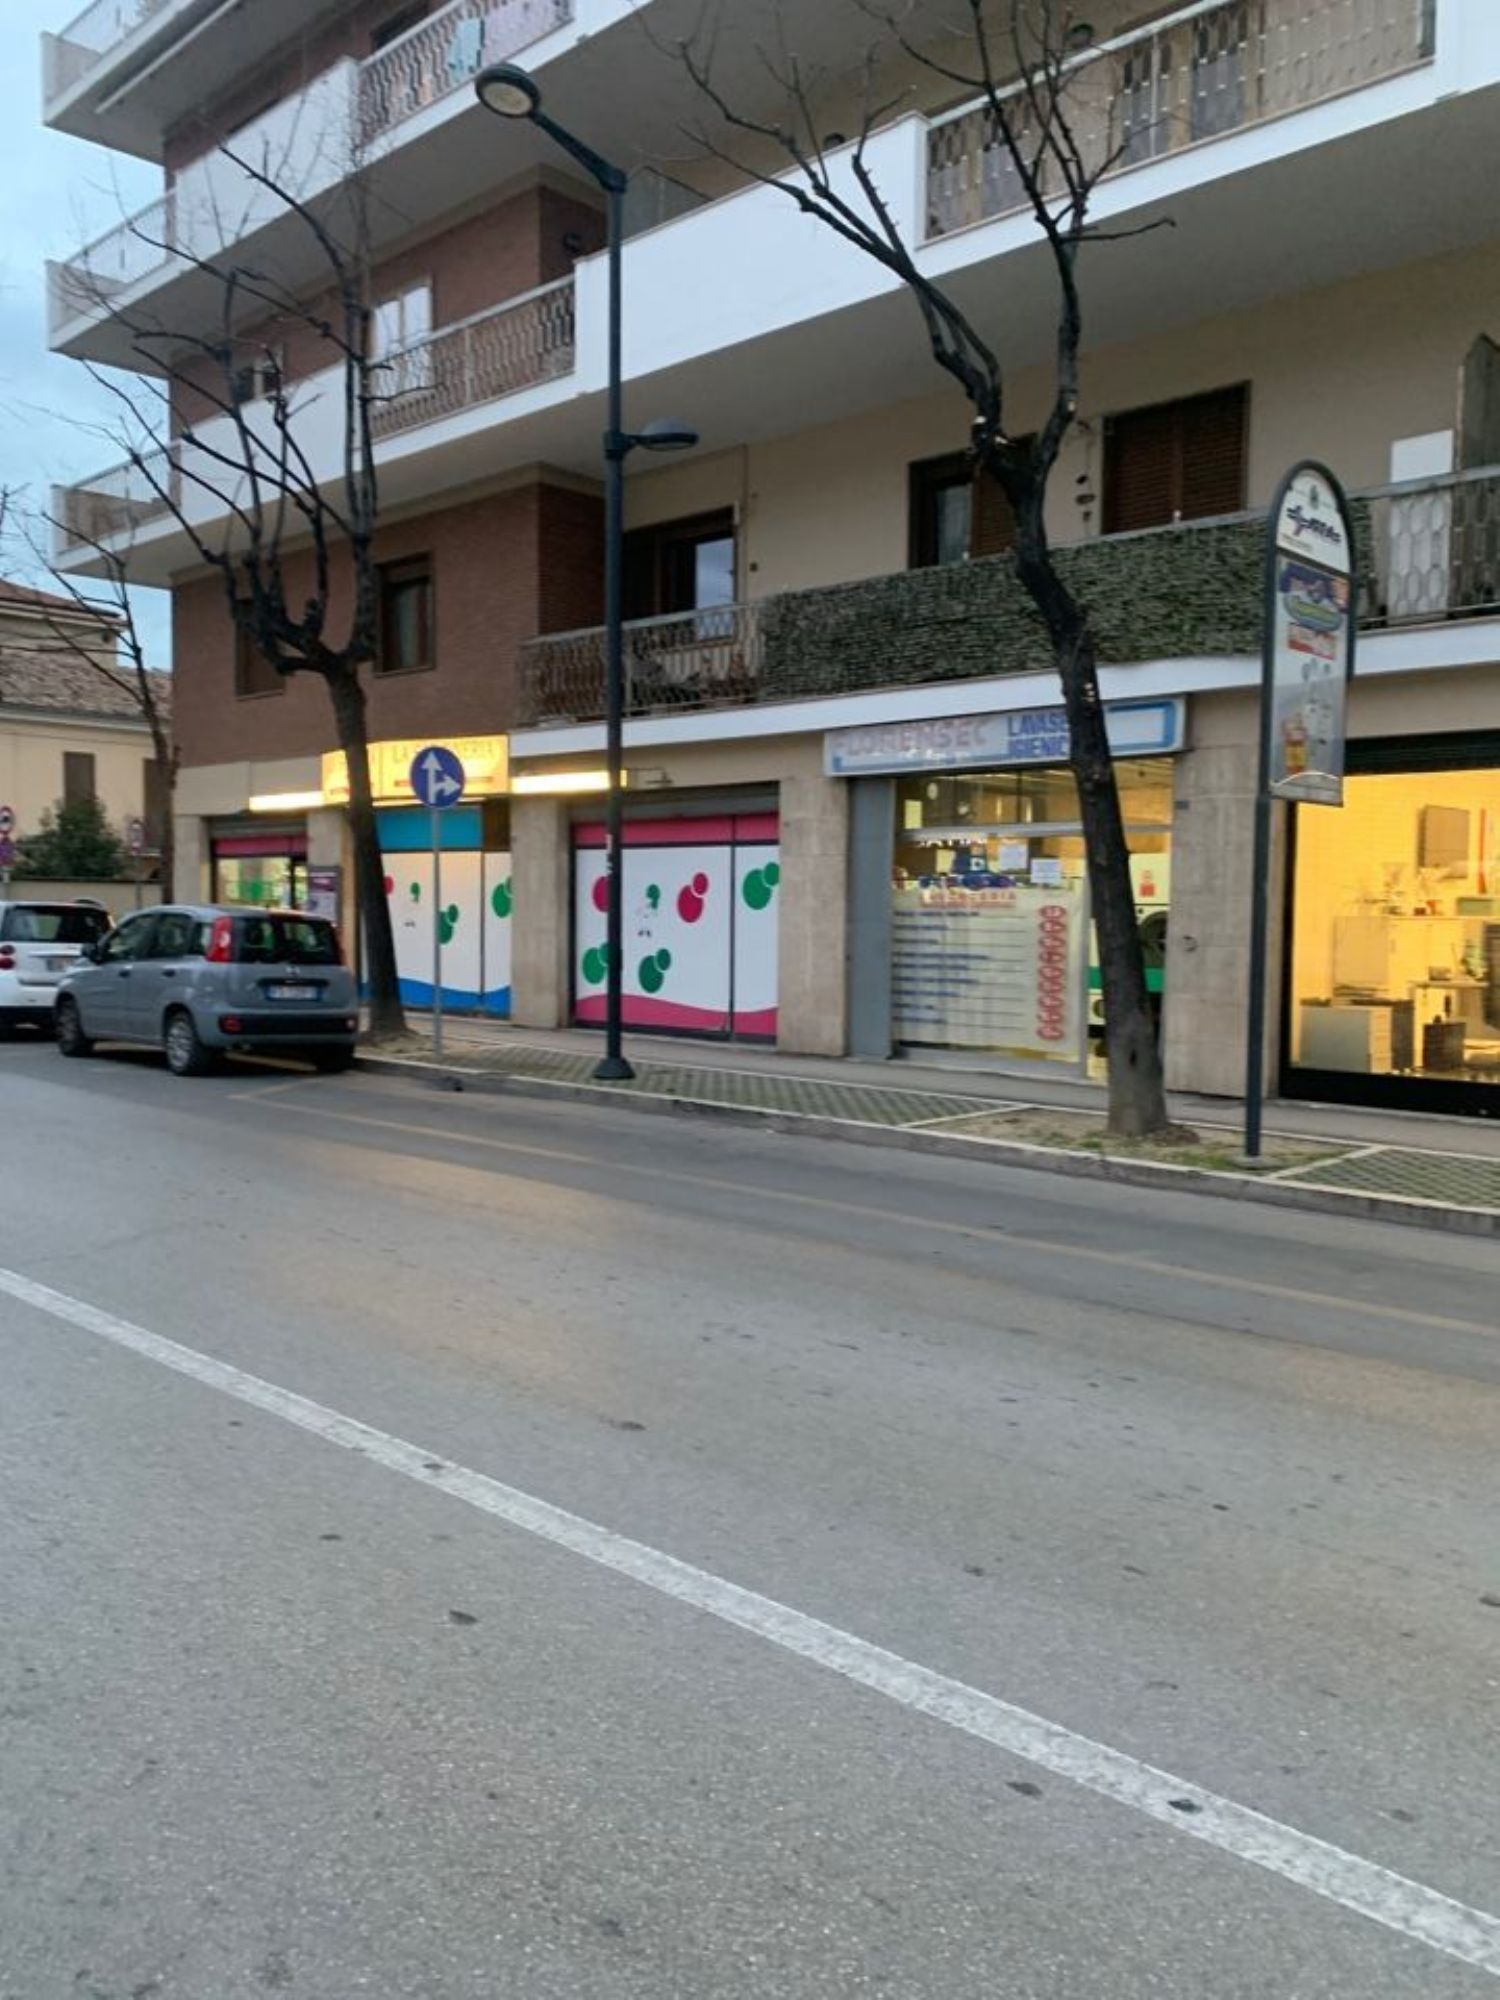 Locale commerciale in affitto in viale g.bovio 298, Pescara